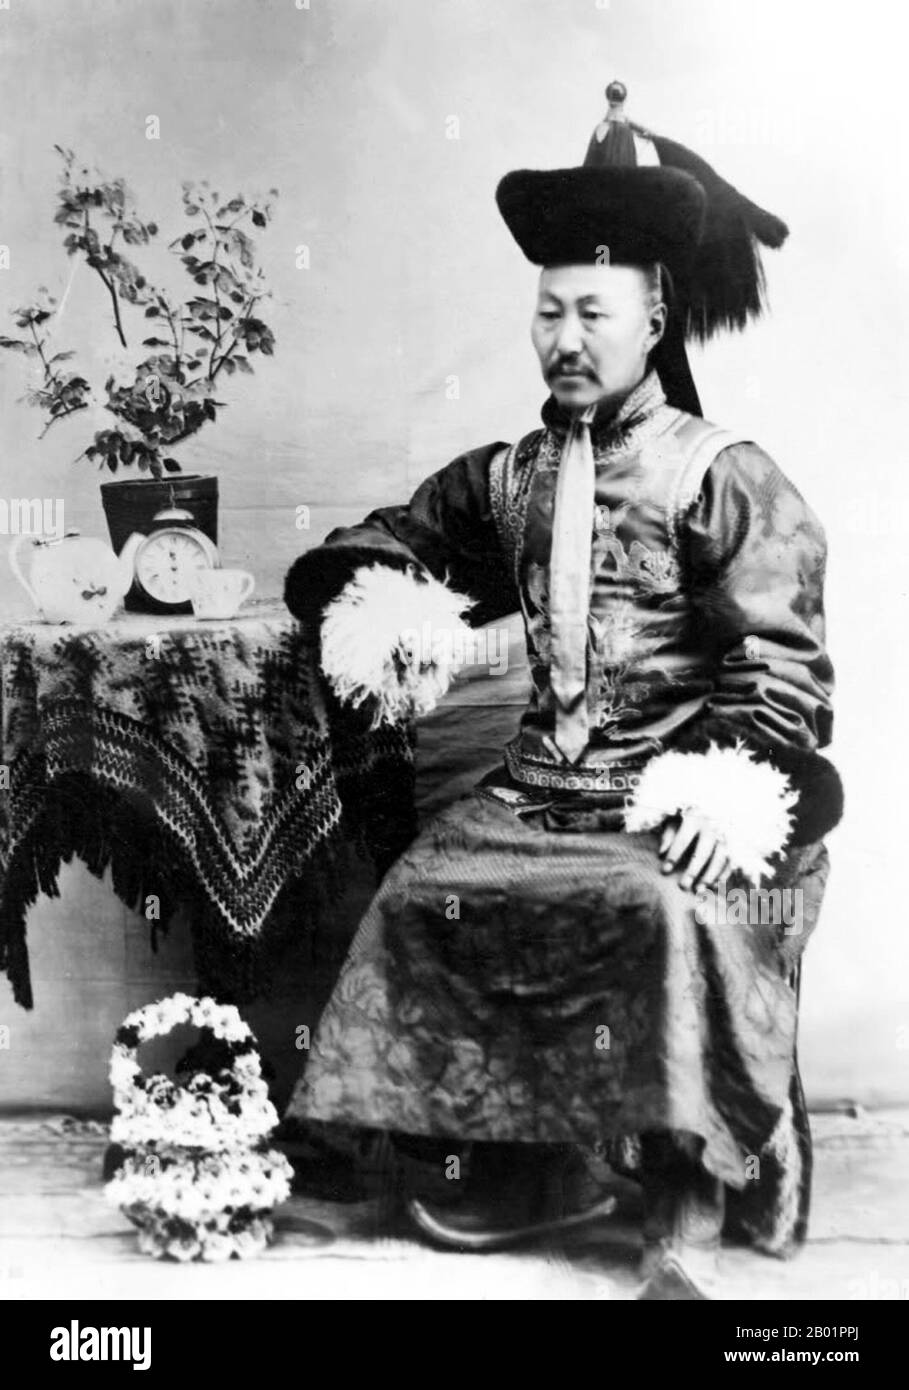 Mongolia: Togtokh Taij (13 de mayo de 1864 - abril de 1922), jefe de Gorlos de Mongolia Interior y líder de la Revolución de Mongolia de 1911. La revolución mongola de 1911 ocurrió cuando la región de Mongolia Exterior declaró su independencia de la China de la dinastía Qing durante la Revolución Xinhai. Una combinación de factores llevó a muchos en China a estar insatisfechos con el gobierno. Cuando se dio a conocer un nuevo programa para establecer Mongolia con la etnia Han y asimilar a los nativos, se encontró con una resistencia que resultó en una separación relativamente sin sangre del Imperio Qing. Foto de stock